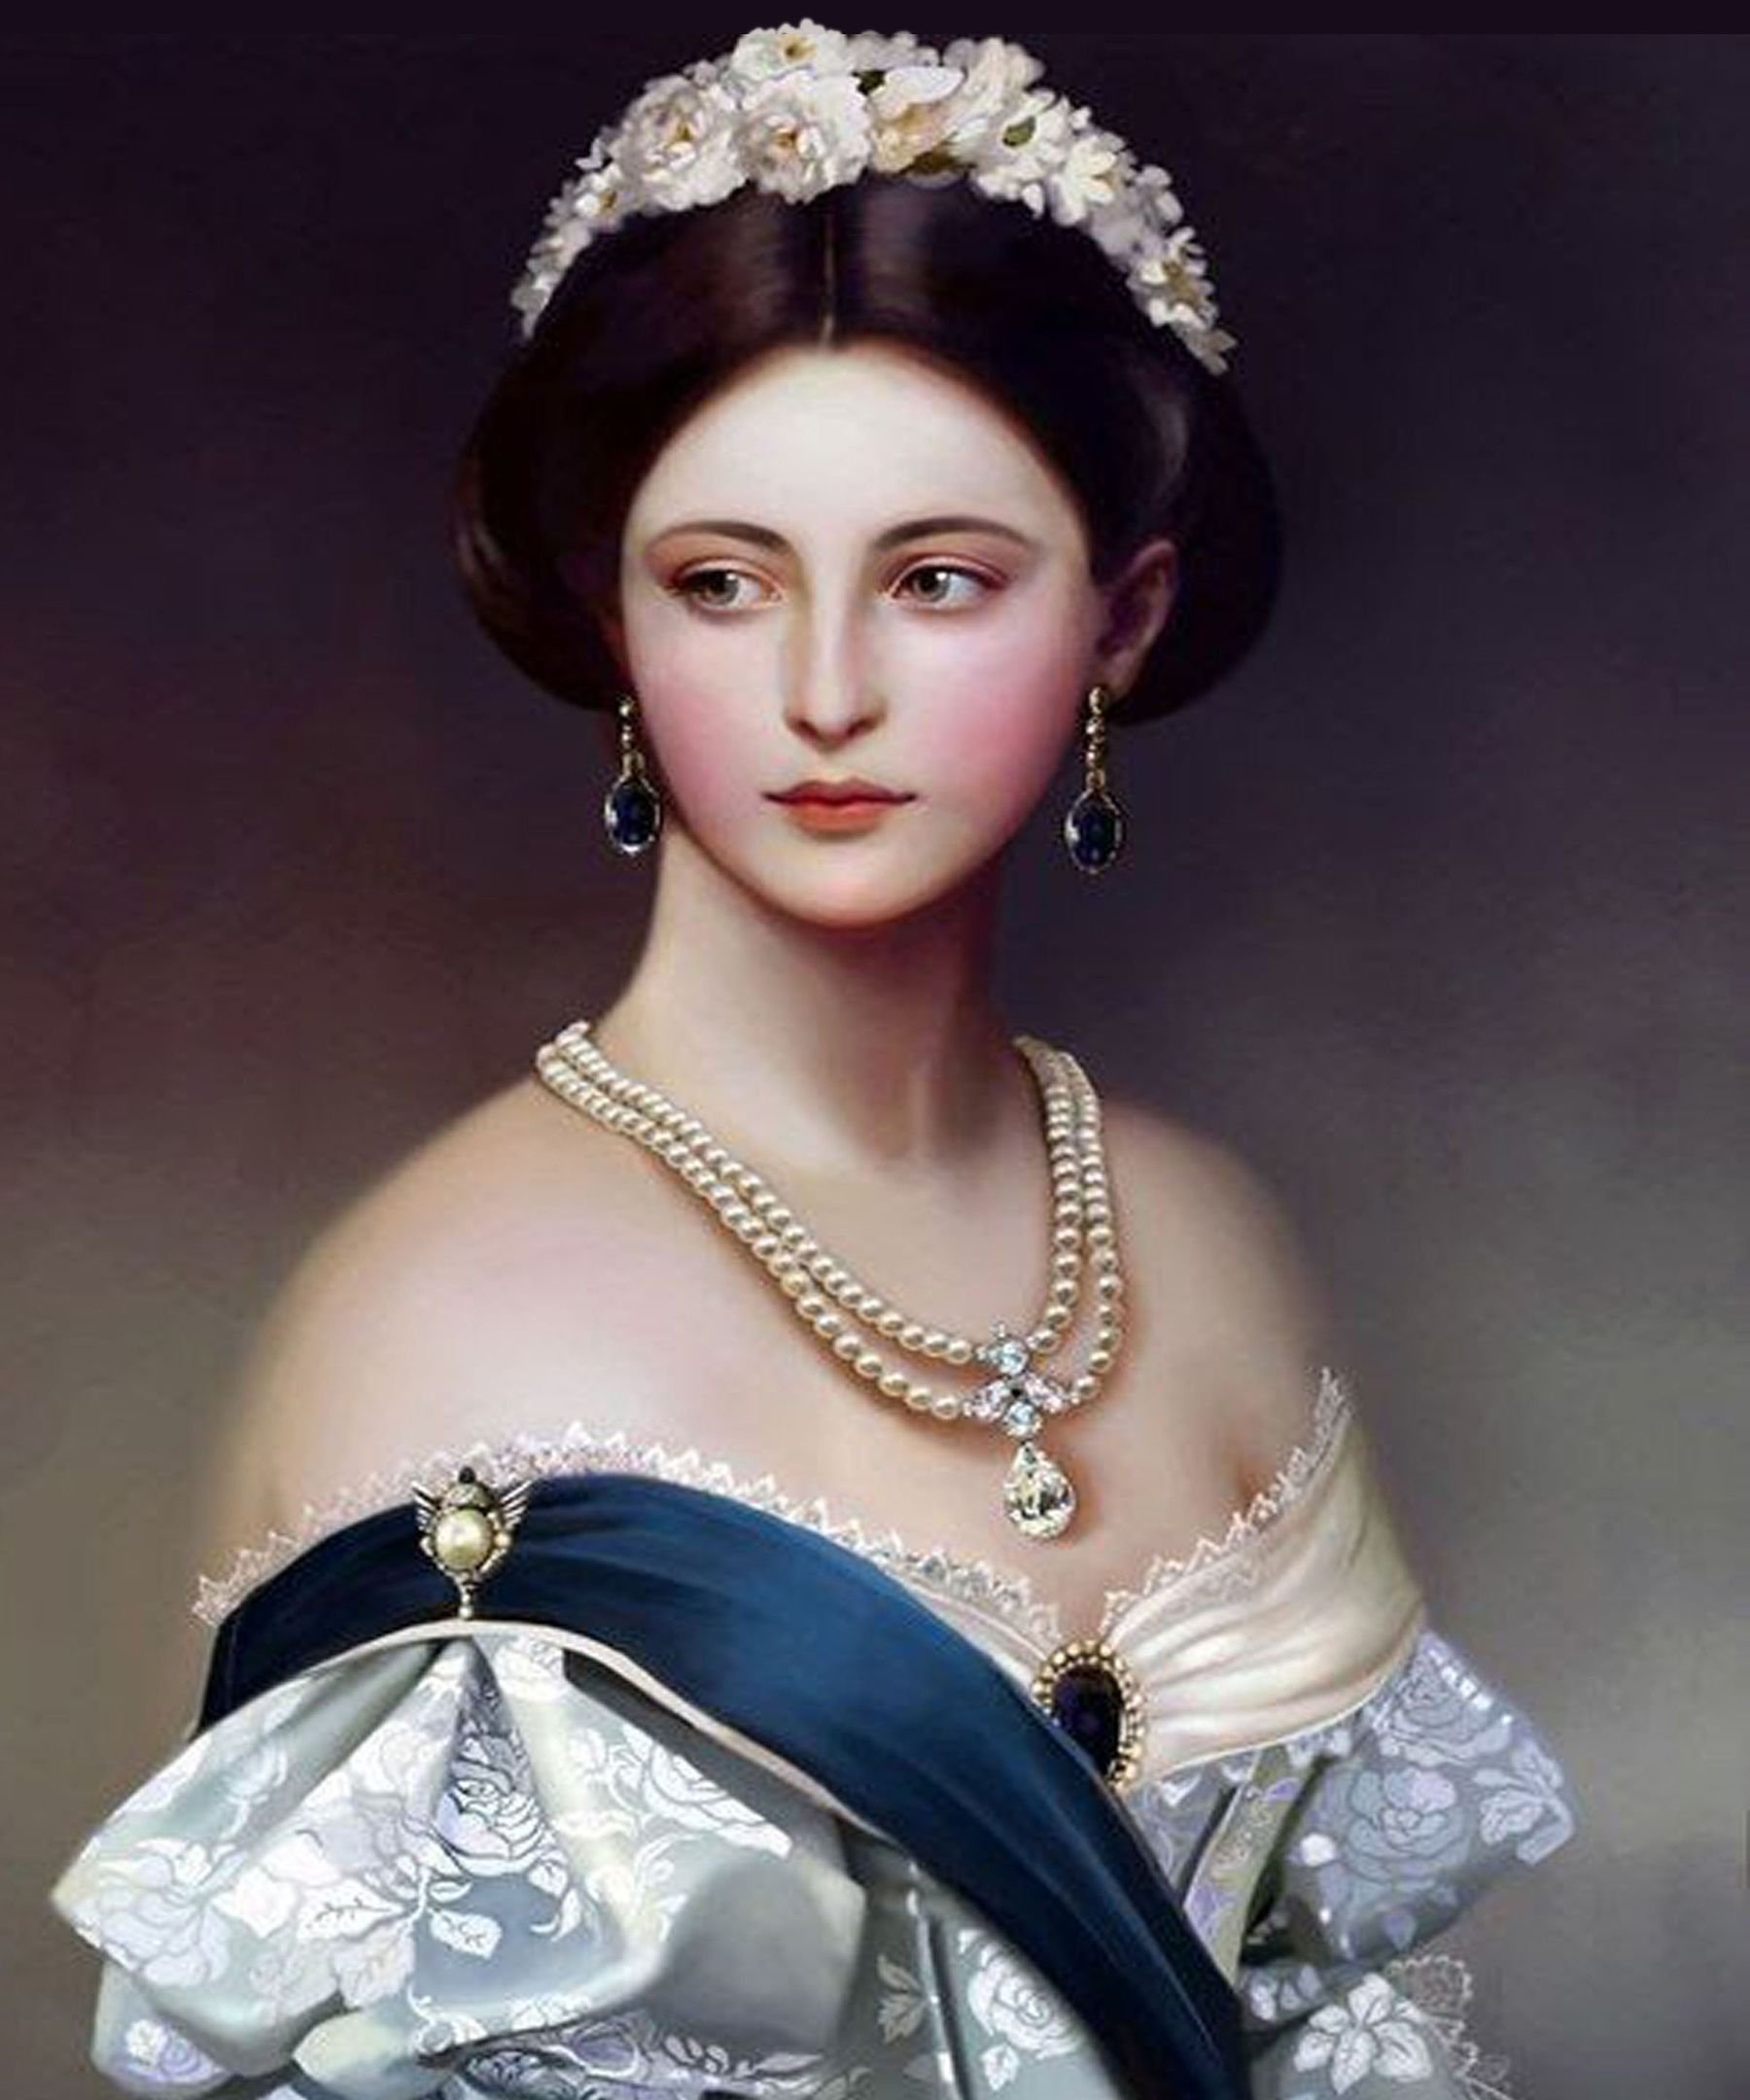 Коллекция портретов. Принцесса Шарлотта Винтерхальтер Франц. Франц Ксавер Винтерхальтер 1805-1873 принцесса Шарлотта. Франц Ксавер Винтерхальтер. Франц Ксавьер Винтерхальтер принцесса Шарлотта.